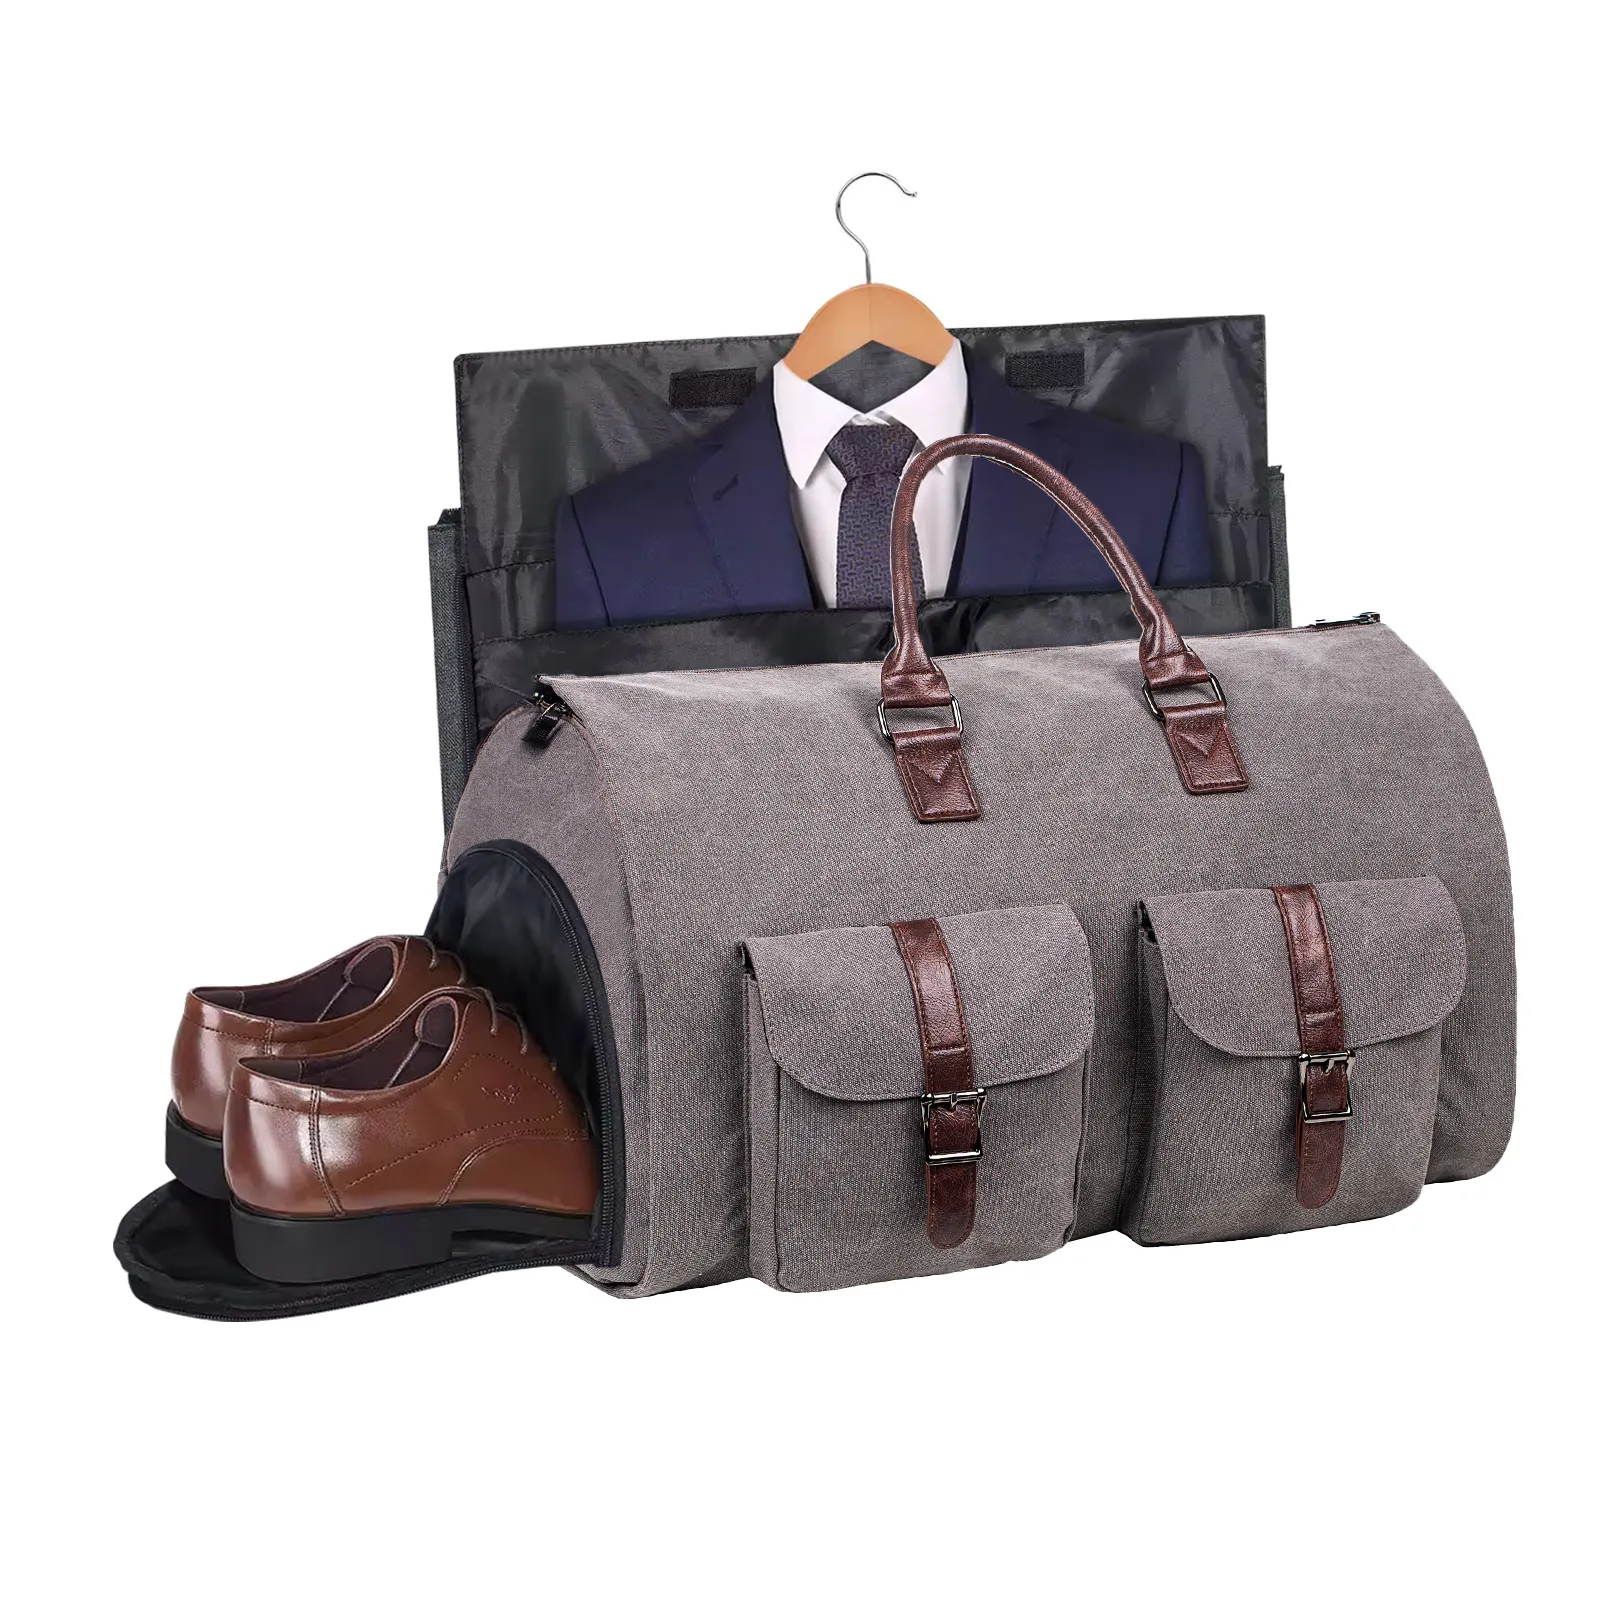 Cabrio özel haddeleme giysi seyahat çantası tekerlekli takım giysi çantası konfeksiyon silindir çanta